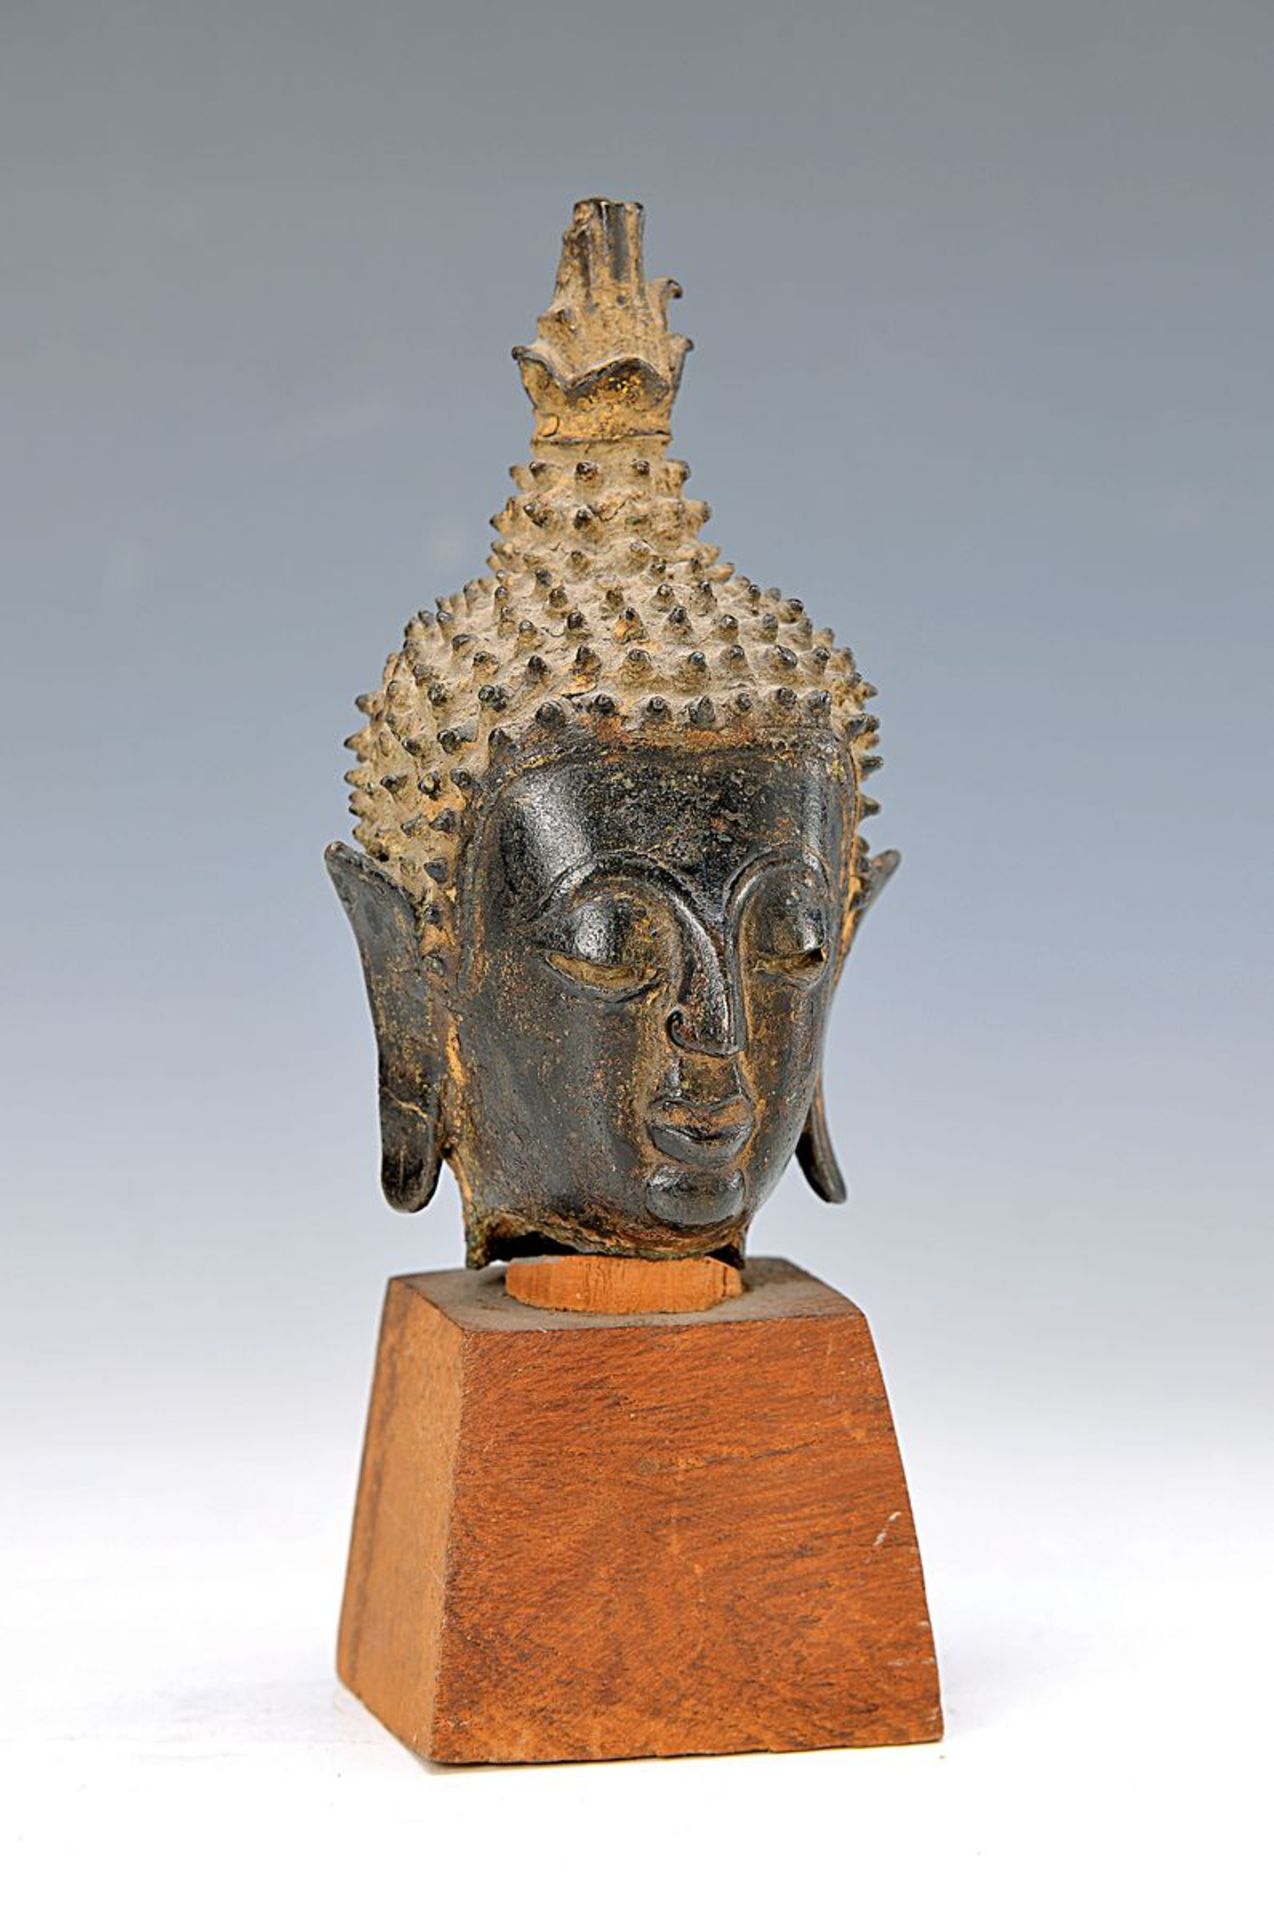 Buddhakopf, Thailand, 17. Jh., Bronze, patiniert, H. ca. 13 cm, aufgeständert, H. 19 cmBuddha